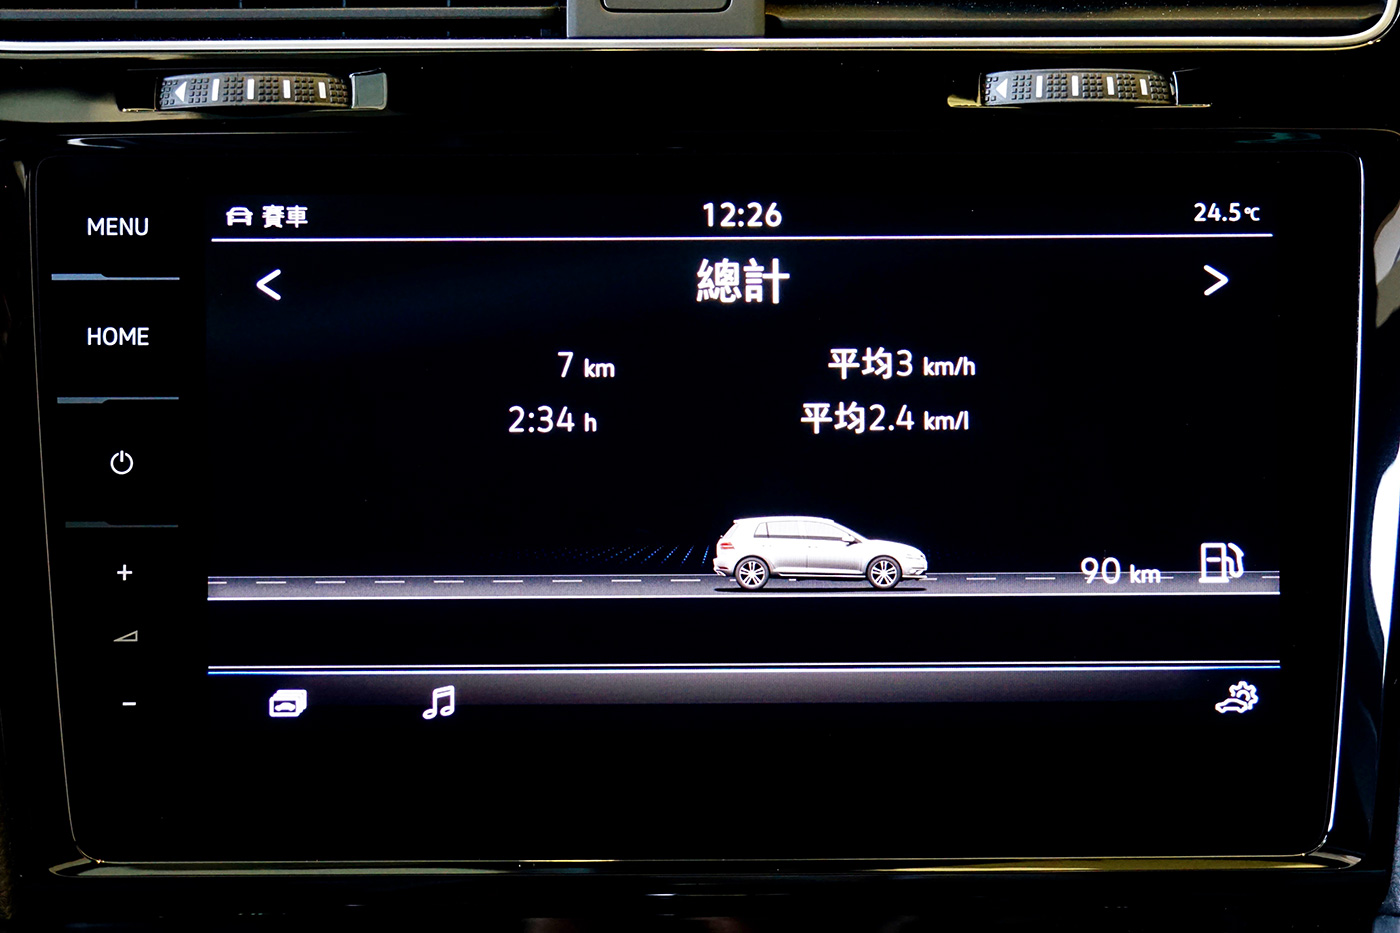 Golf R 觸控螢幕汽車設定